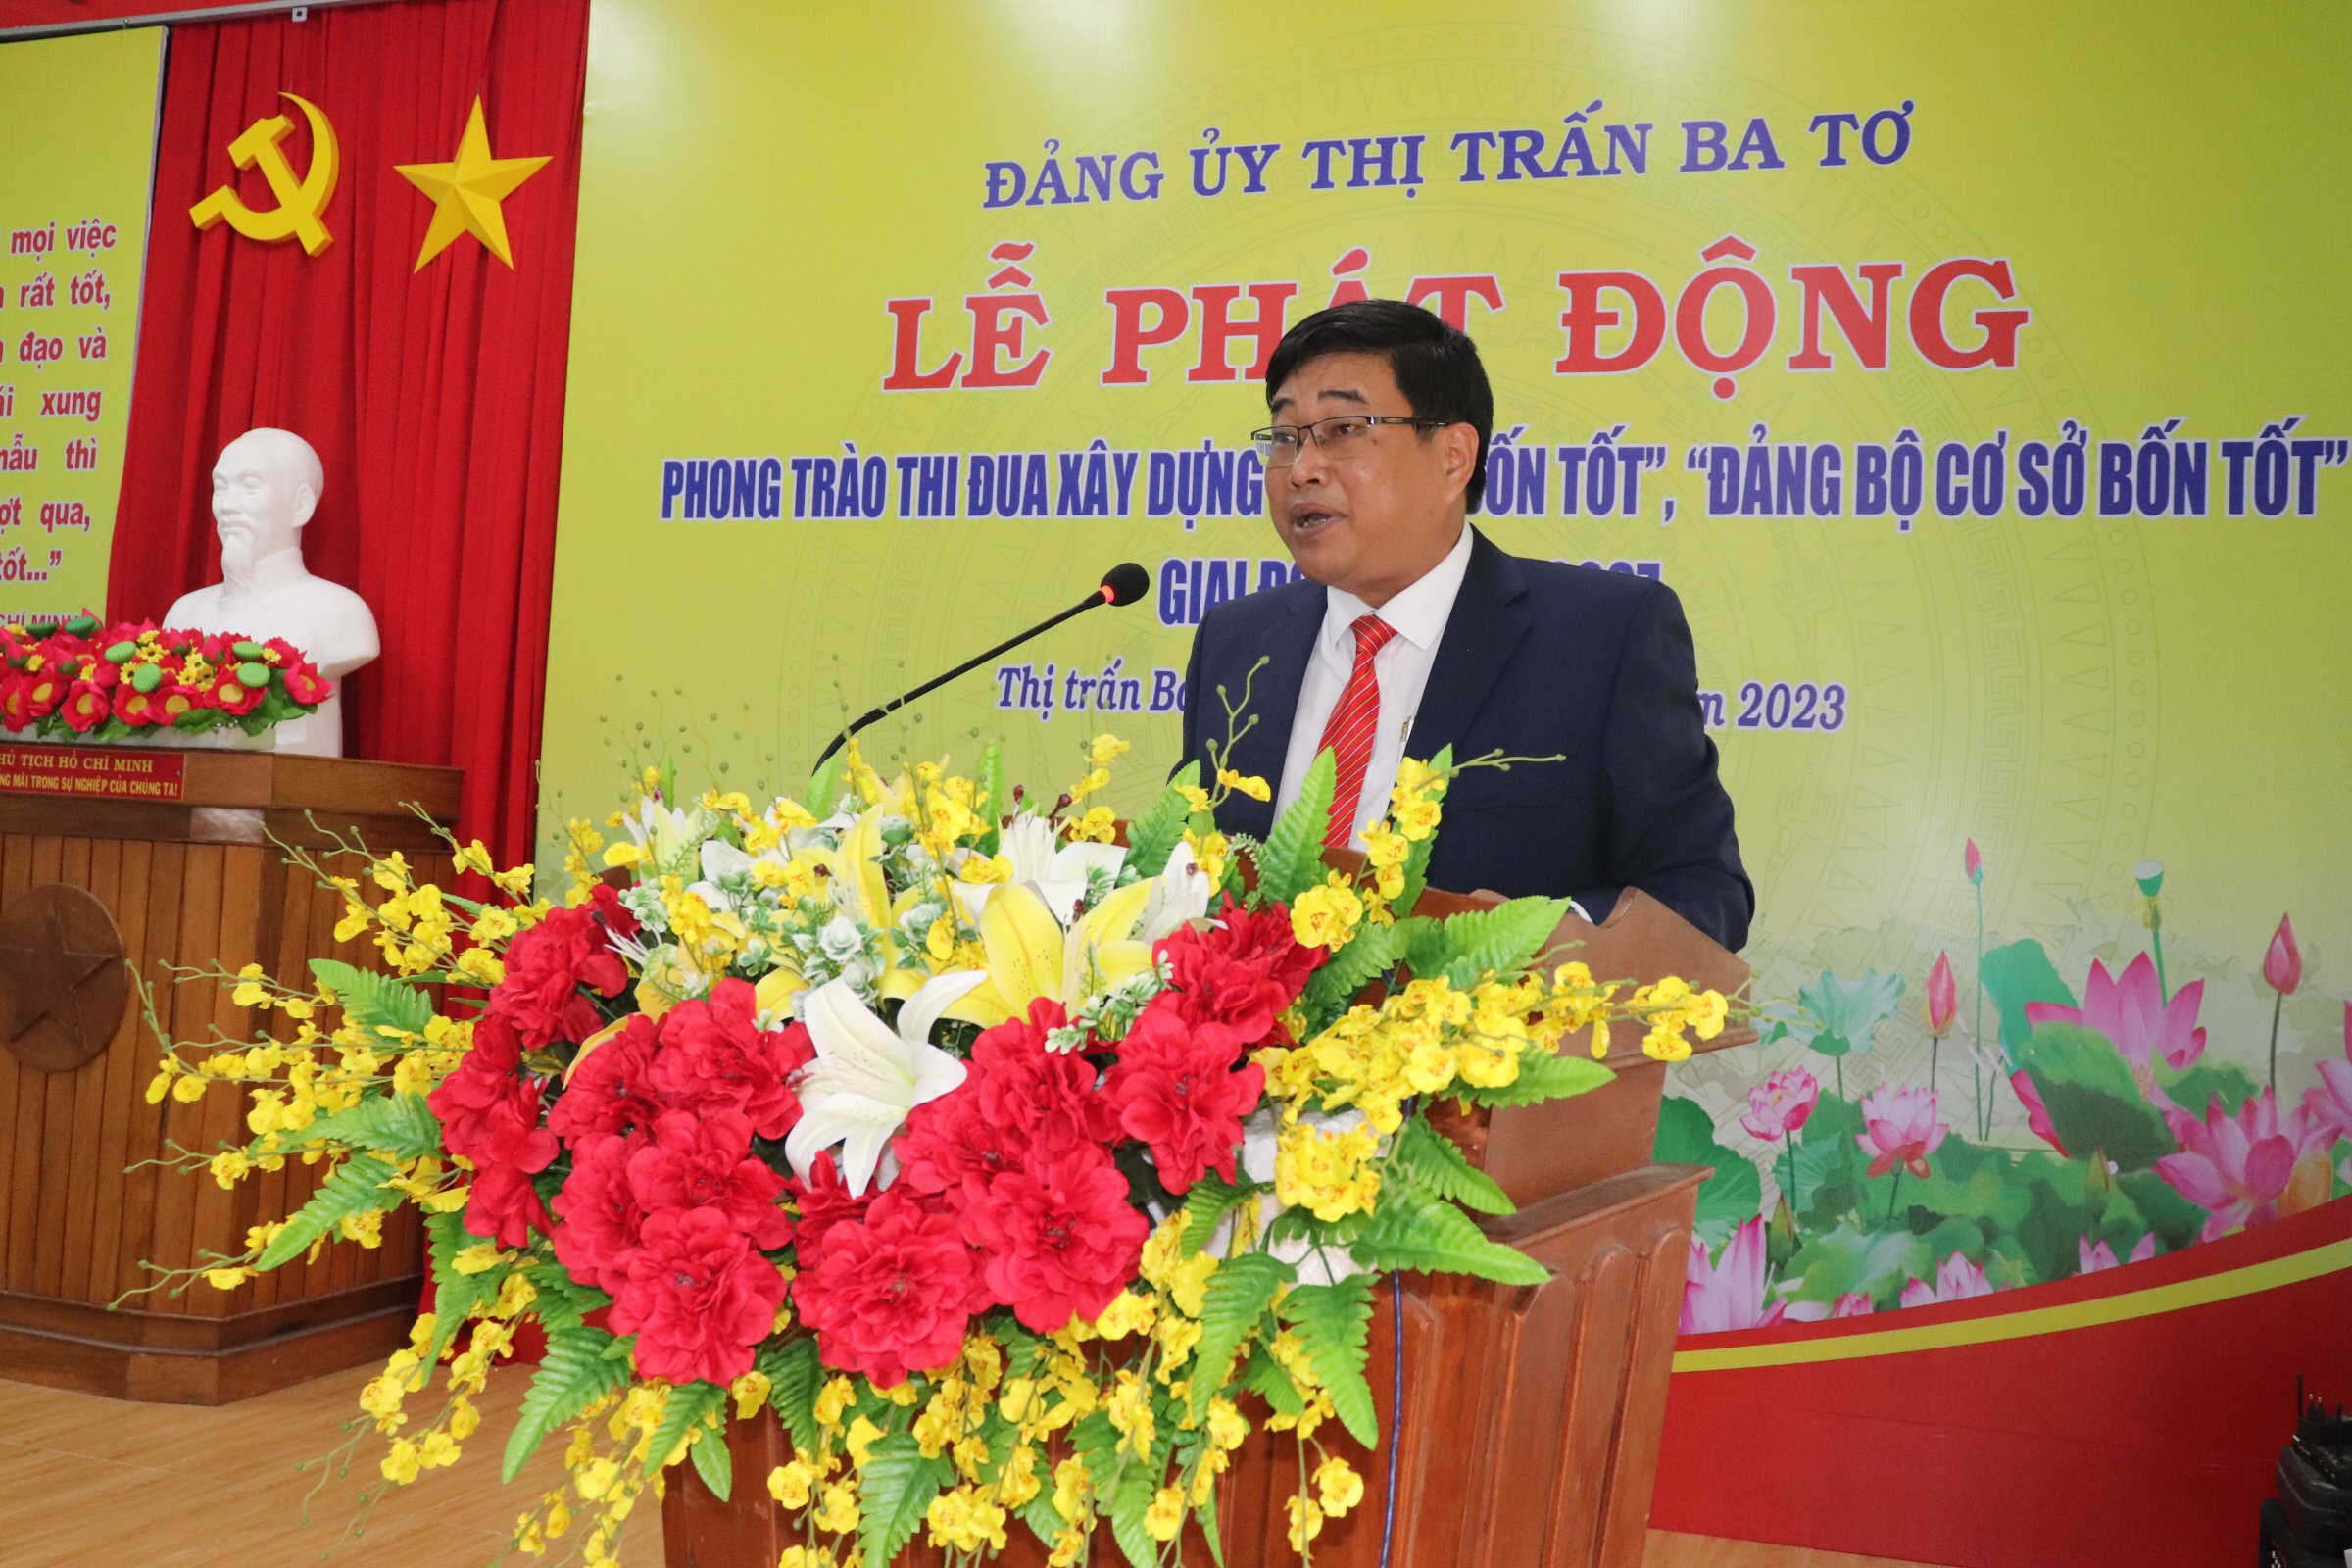 Đảng uỷ thị trấn Ba Tơ phát động phong trào thi đua xây dựng “chi bộ bốn tốt”, “đảng bộ cơ sở bốn tốt” giai đoạn 2022 - 2027